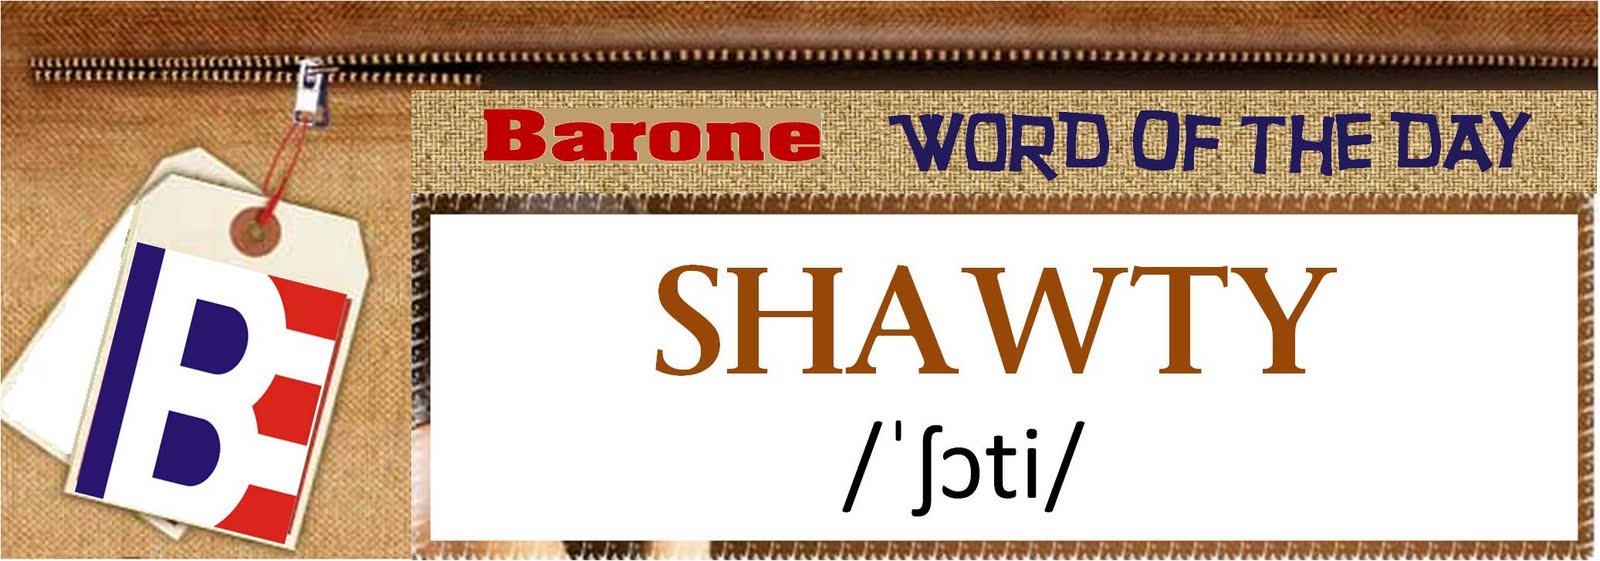 Podcast:El significado de shorty y shawty en ingles:www.vocatic.com